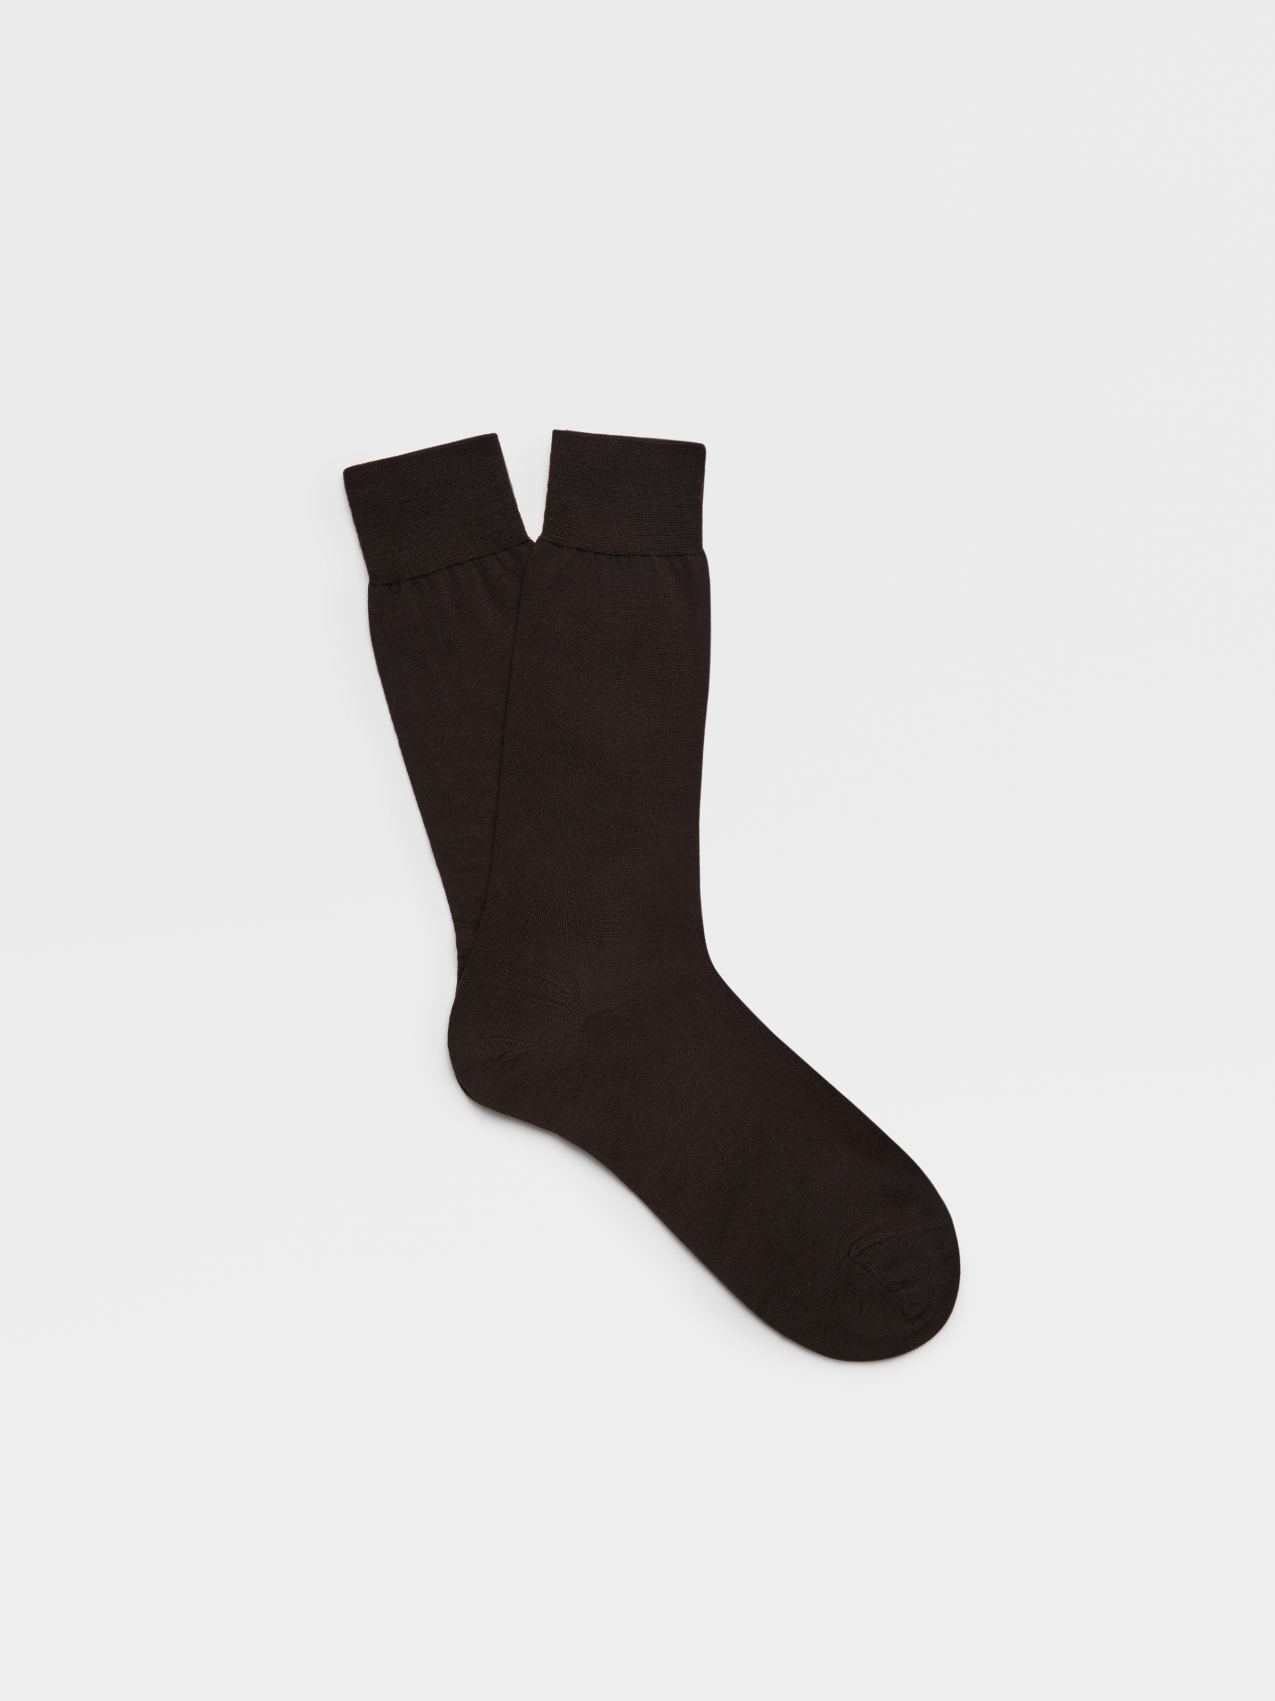 Brown Wool Mid Calf Socks